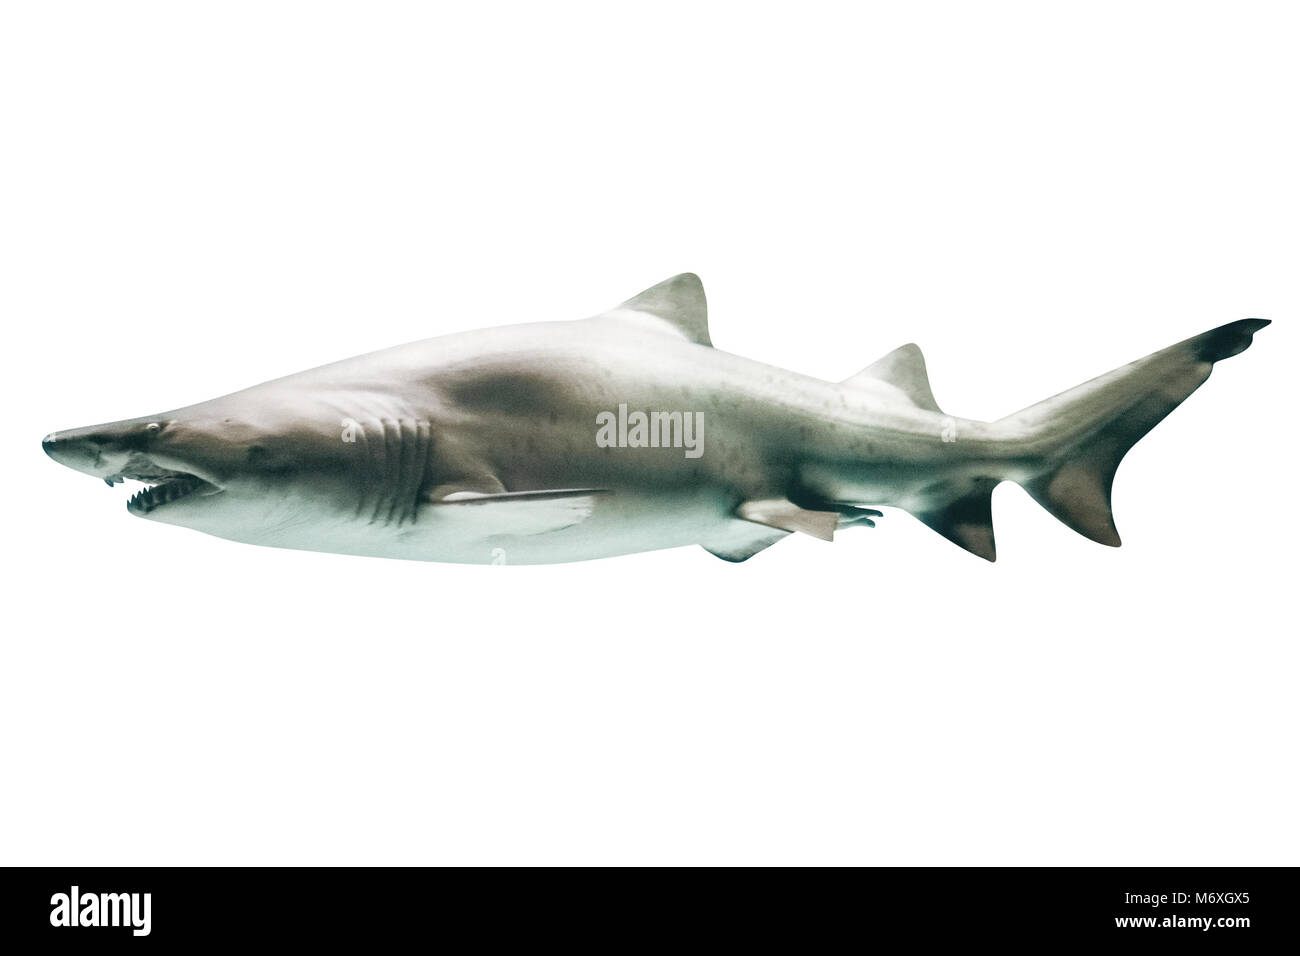 Vue latérale du grand requin blanc, Carcharodon carcharias, isolé sur blanc.Le grand requin blanc est le plus gros poisson connu macropredatory, et est l'un des principaux prédateurs des mammifères marins.Copy space Banque D'Images